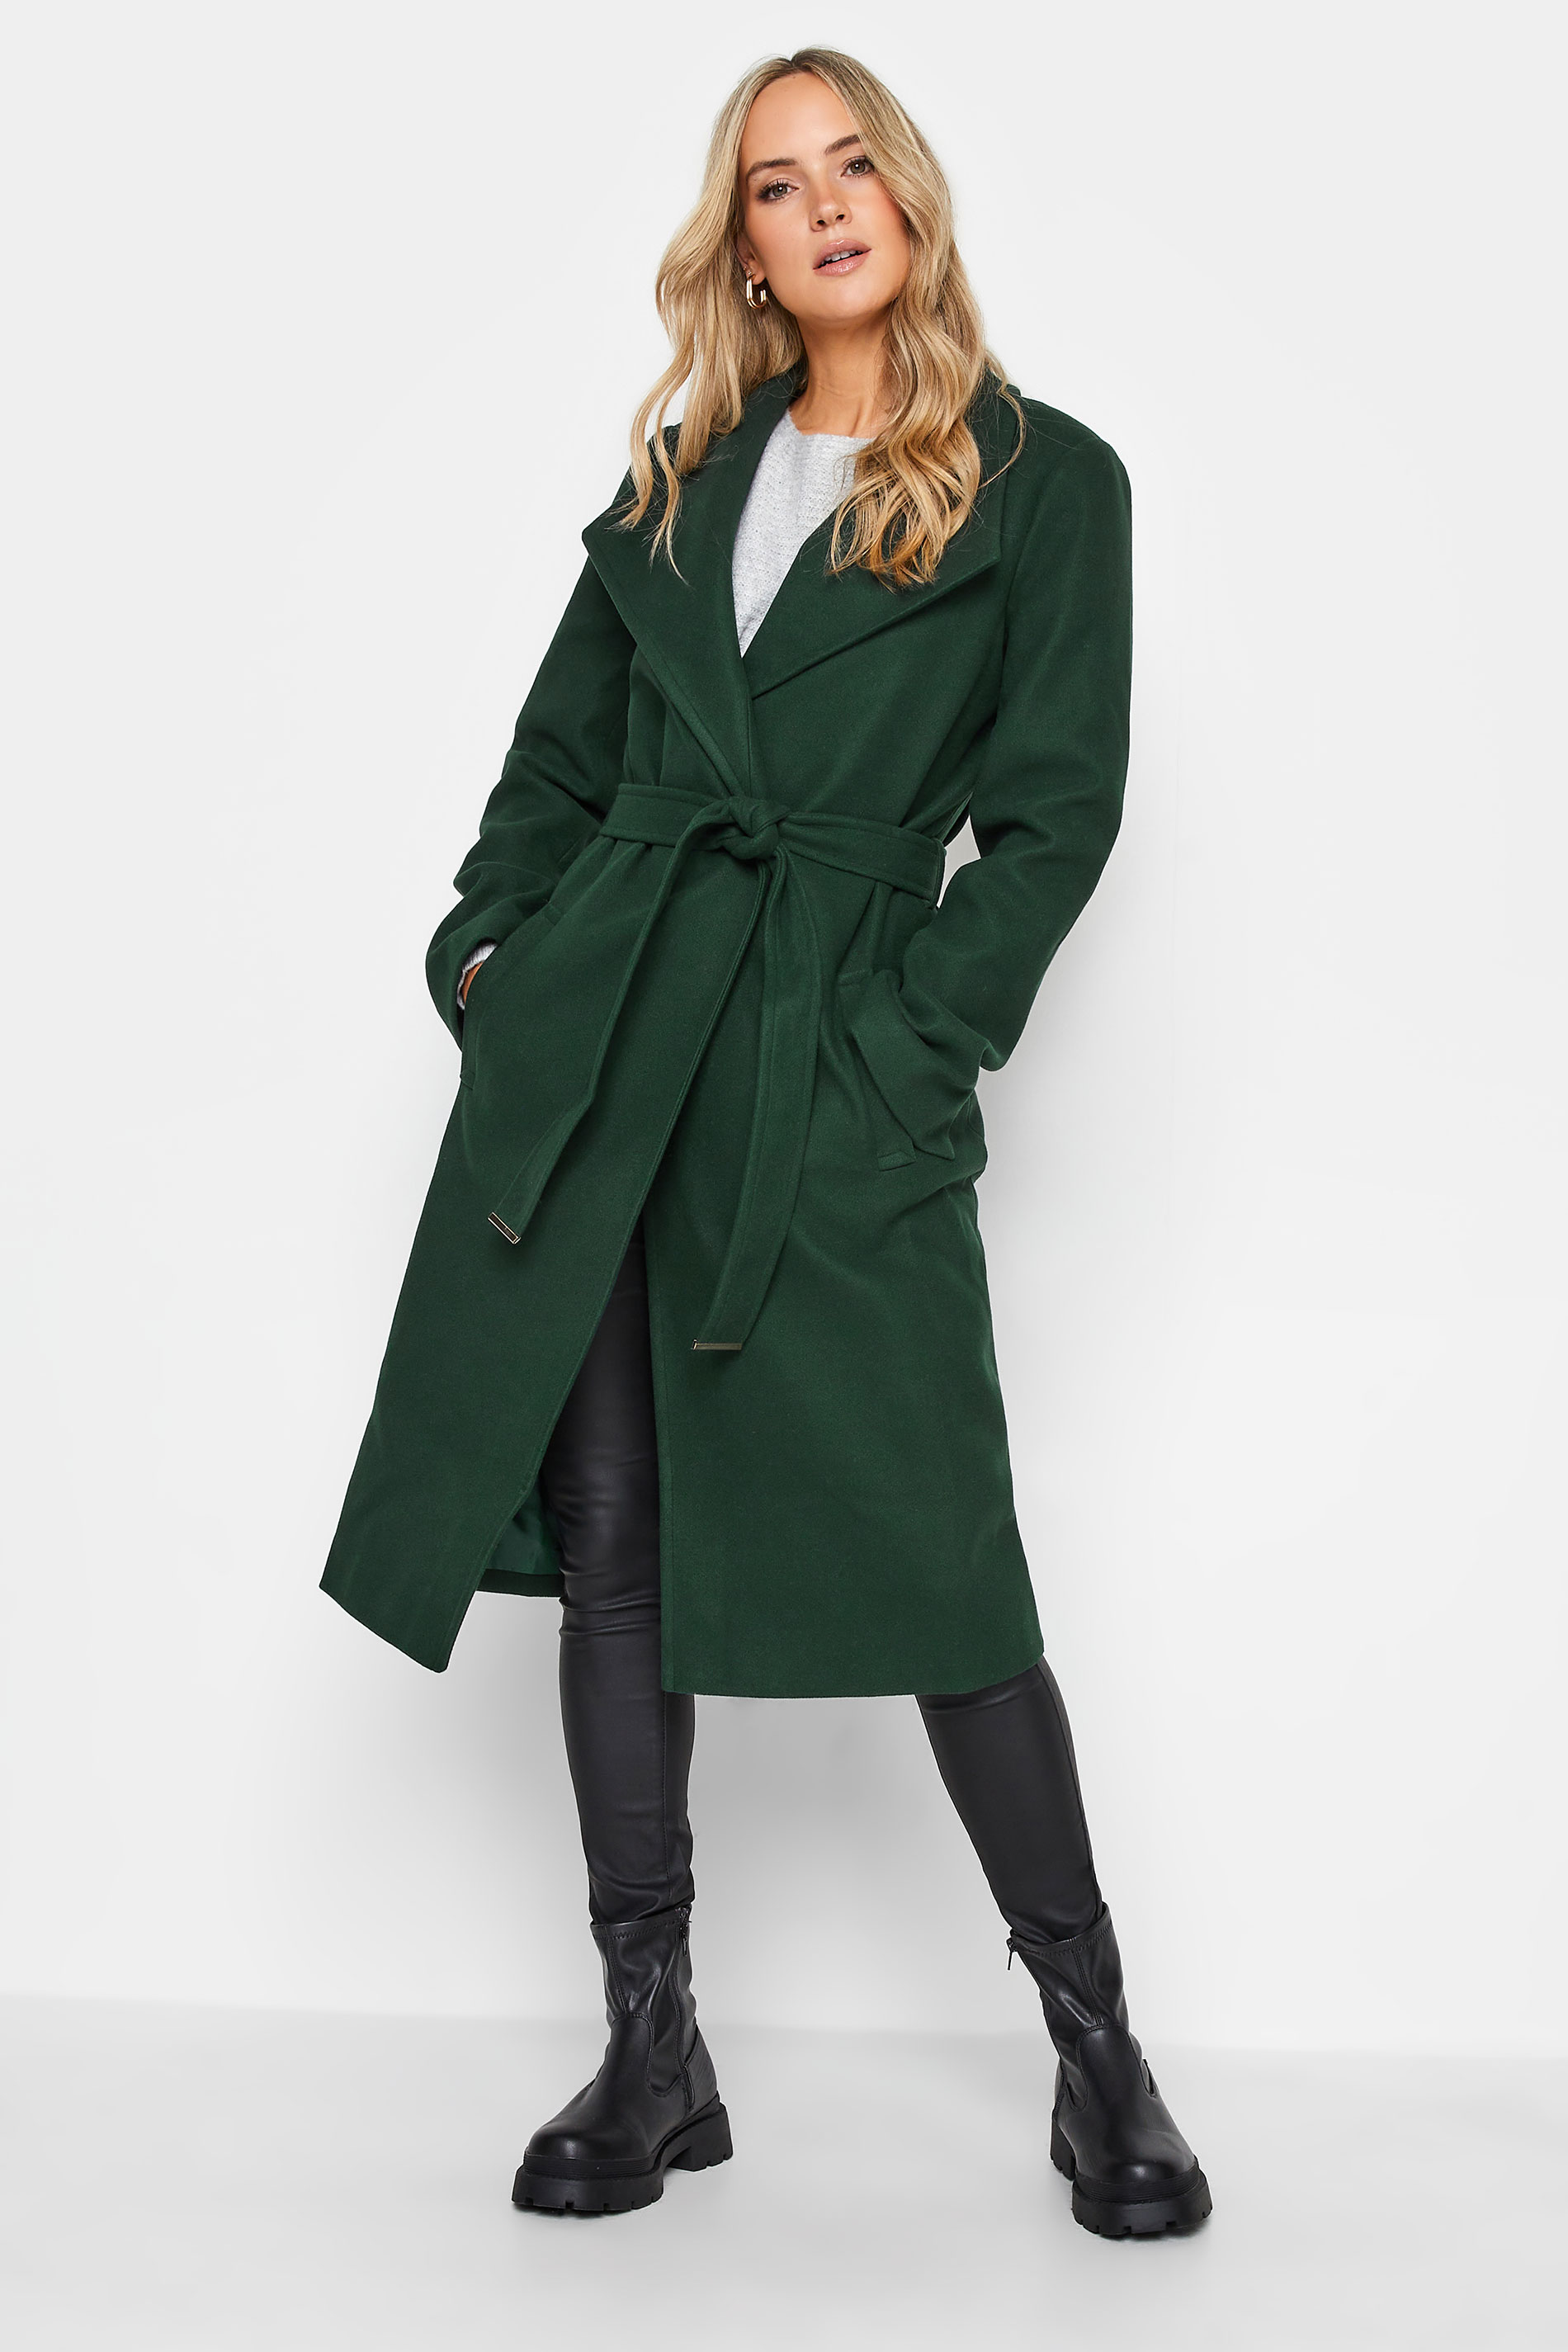 LTS Tall Women's Dark Green Belted Coat | Long Tall Sally 1